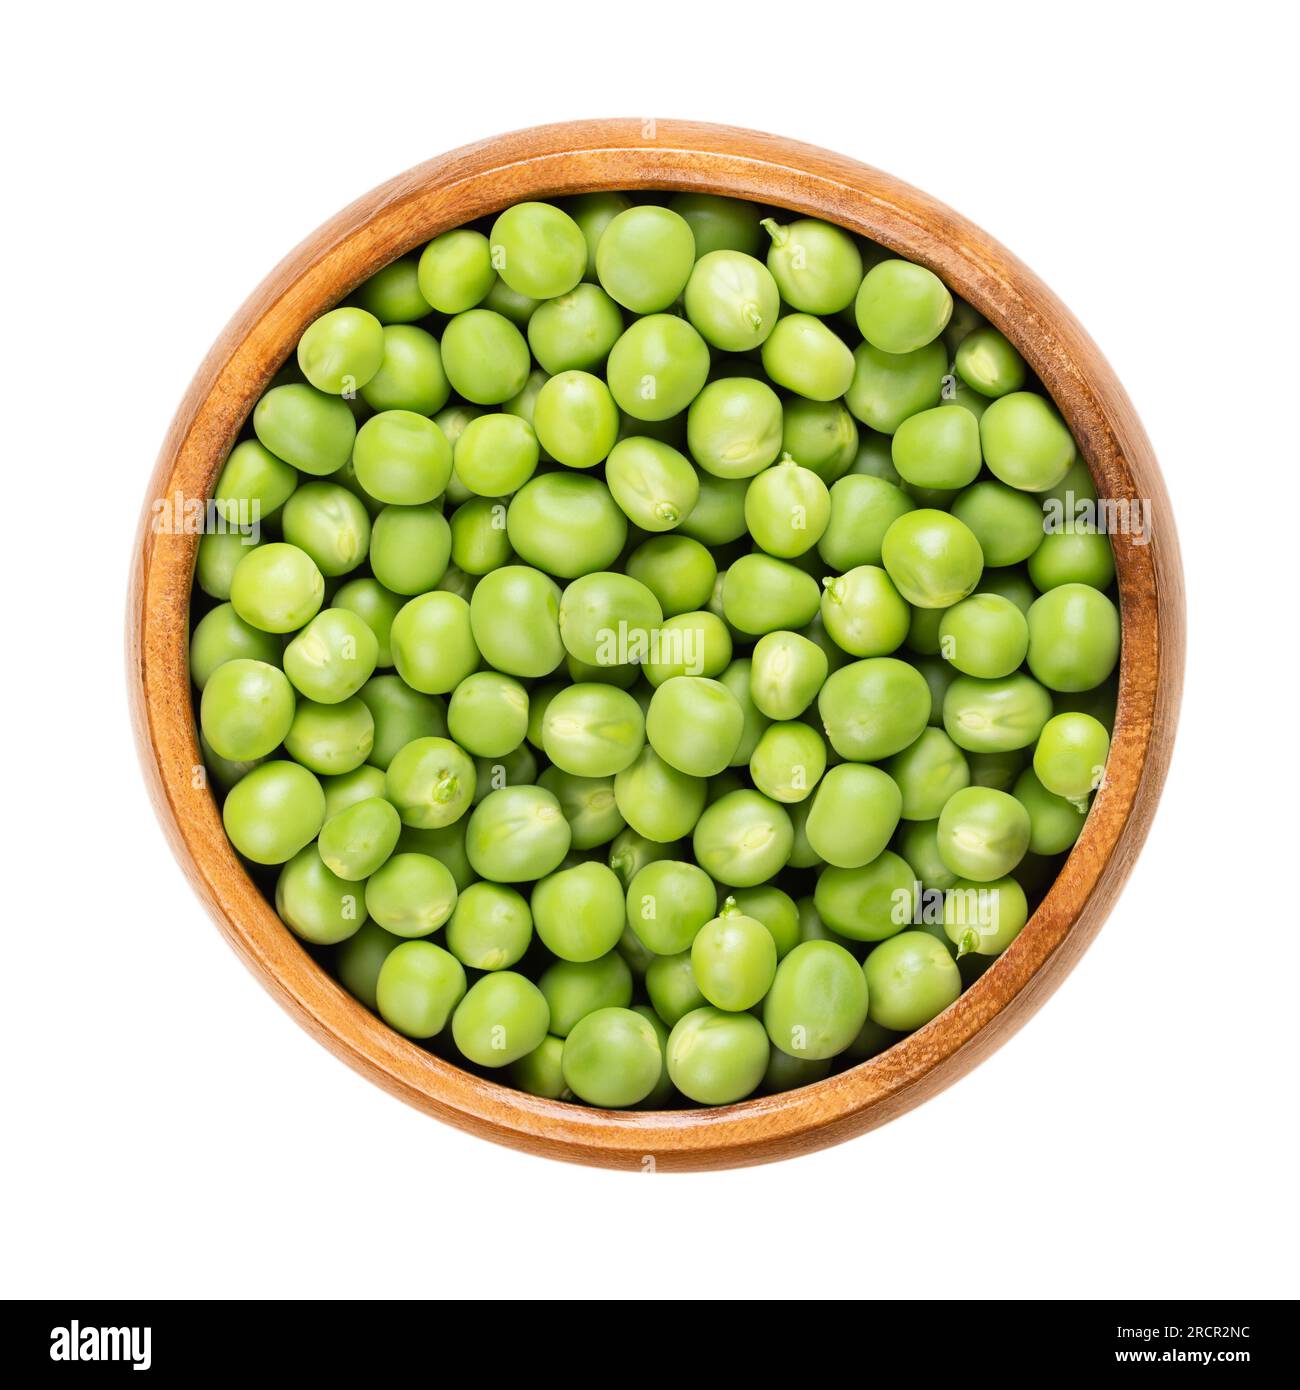 Frische grüne Erbsen in einer Holzschüssel. Rohe, kleine kugelförmige Samen der Hülsenfrucht Pisum sativum von grünlicher und gelblicher Farbe, hauptsächlich für Suppen verwendet. Stockfoto